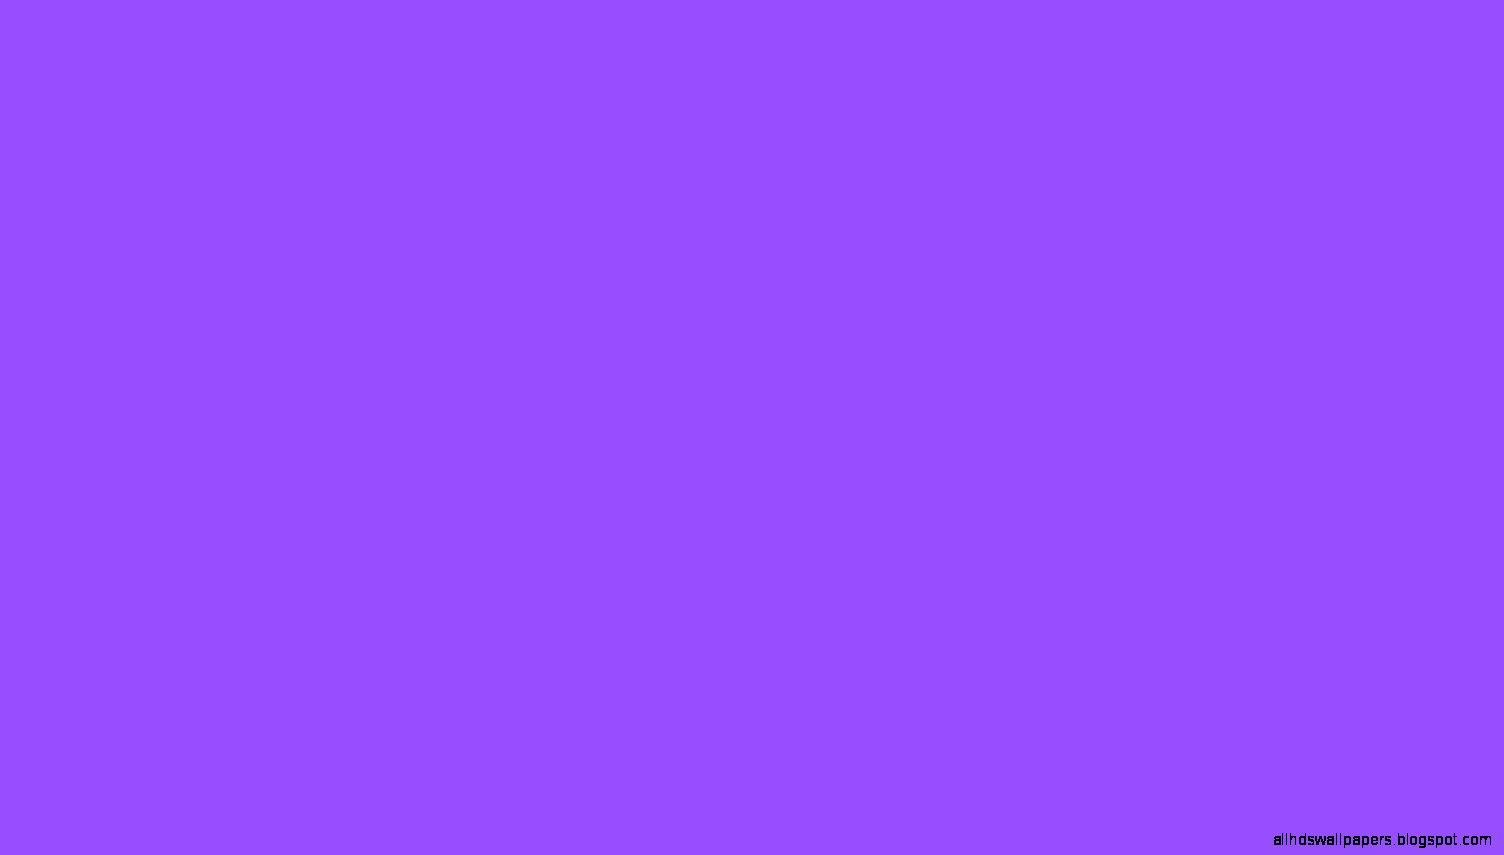 plain purple wallpaper,blue,violet,purple,lilac,pink